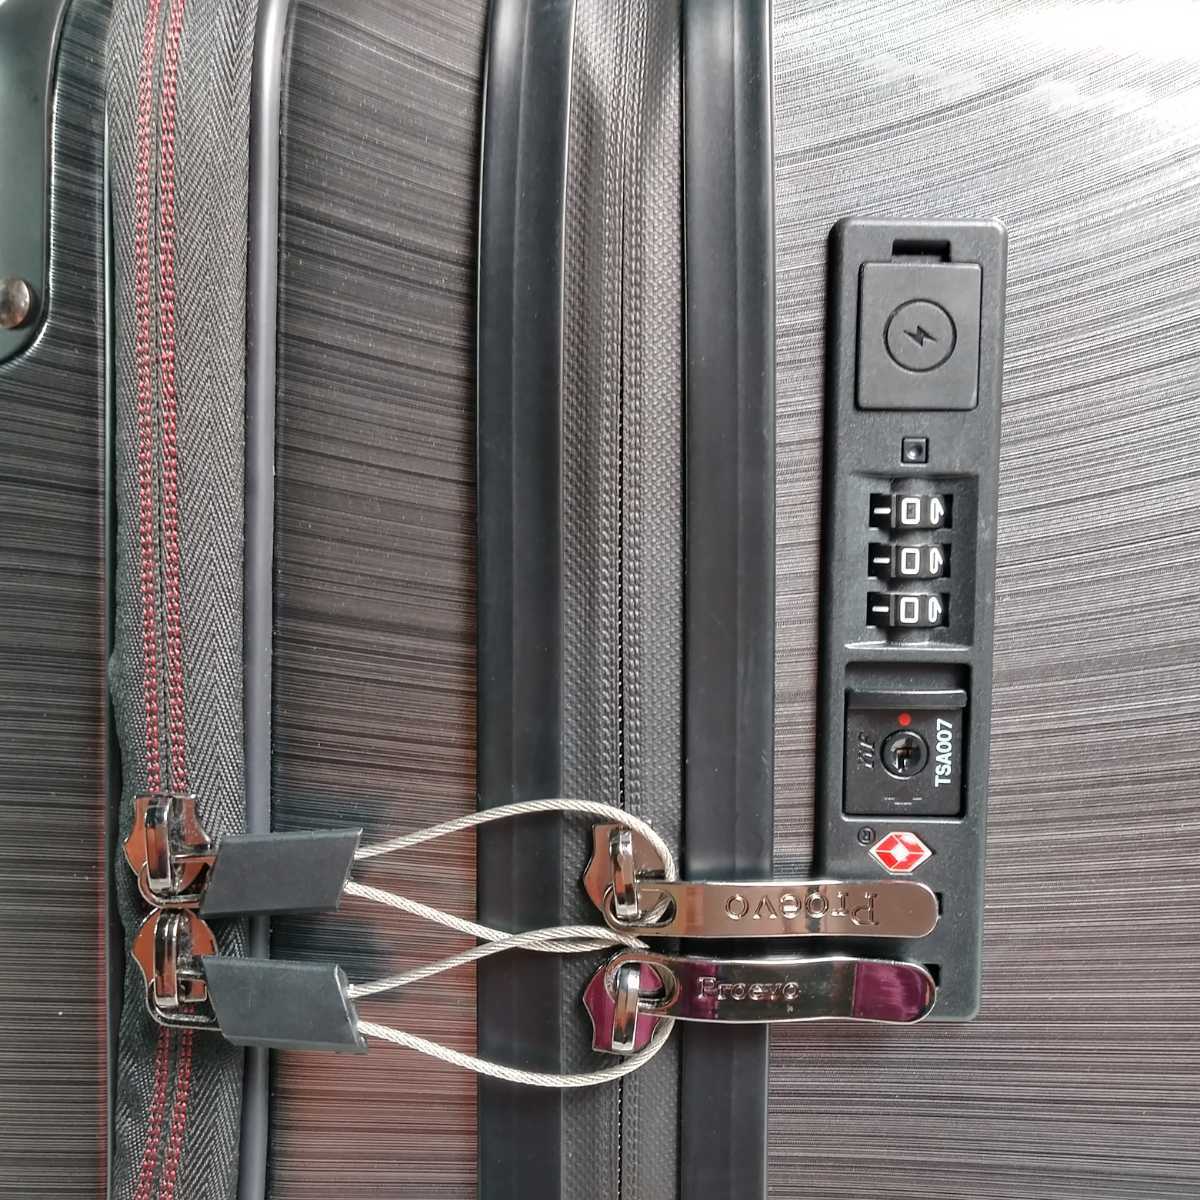 ス68 Sサイズ 横型 フロントオープン スーツケース 機内持ち込み 止水ファスナー USB カップホルダー スクラッチガンメタの画像3